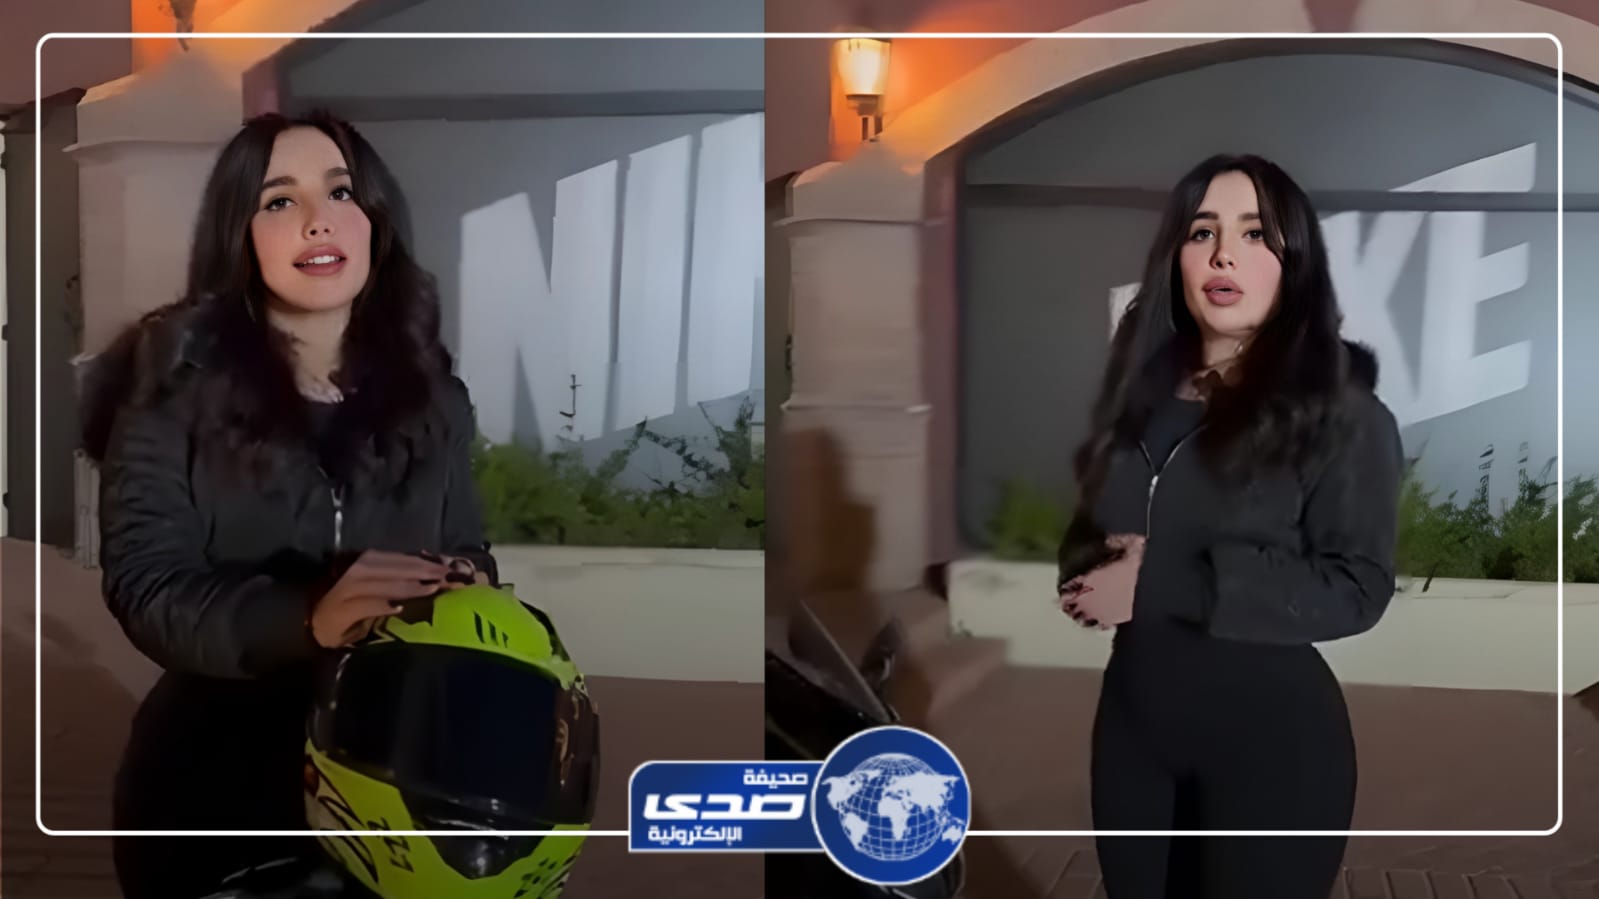 فتاة كويتية تقع في موقف محرج بسبب إعلان ترويجي .. فيديو